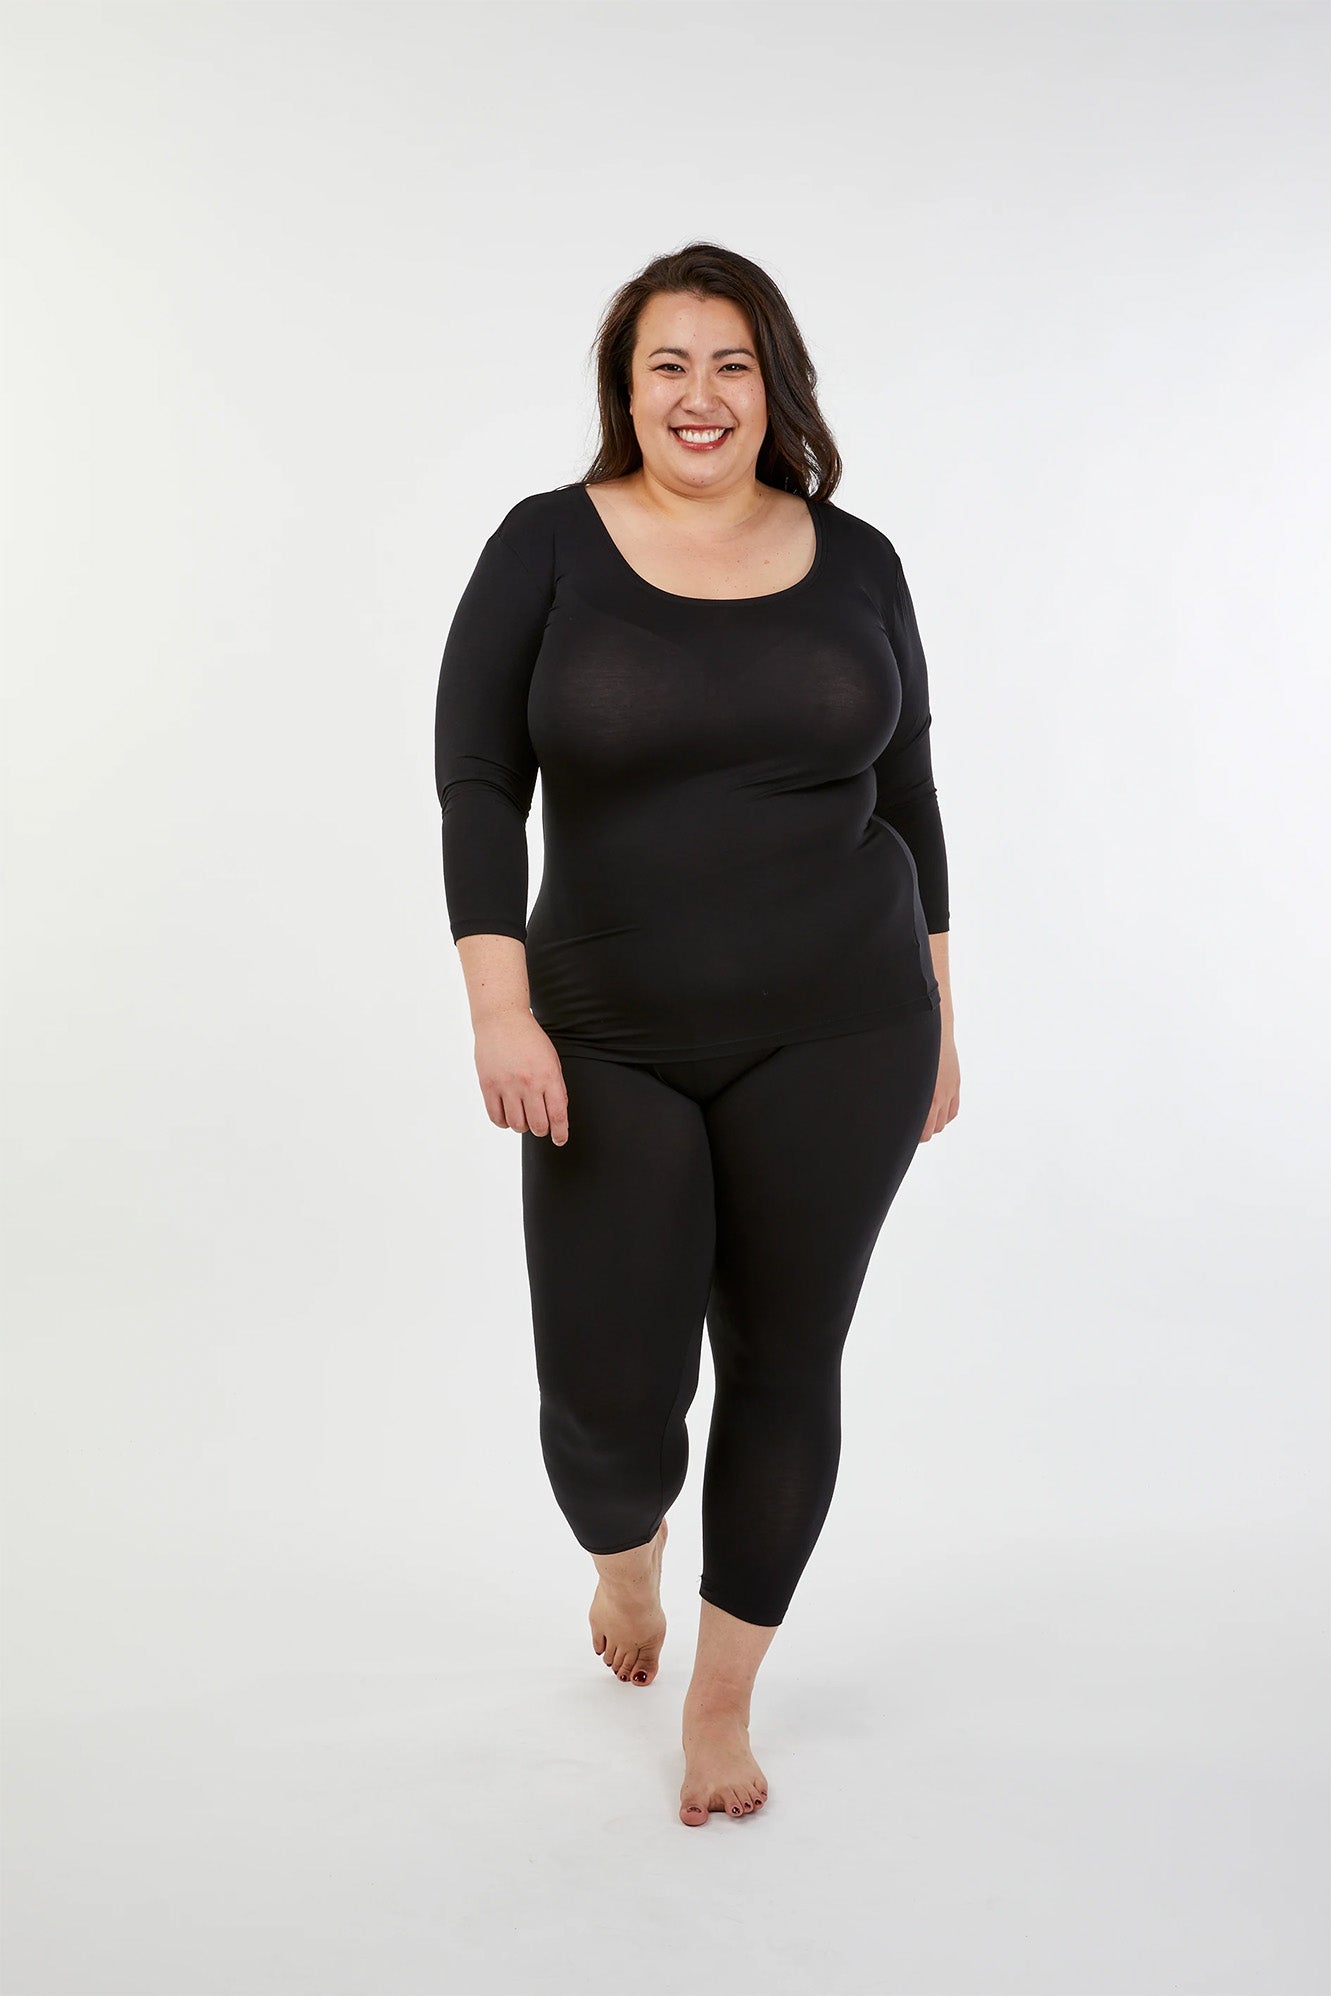 Larger woman wearing black Tani 89226 Leggings